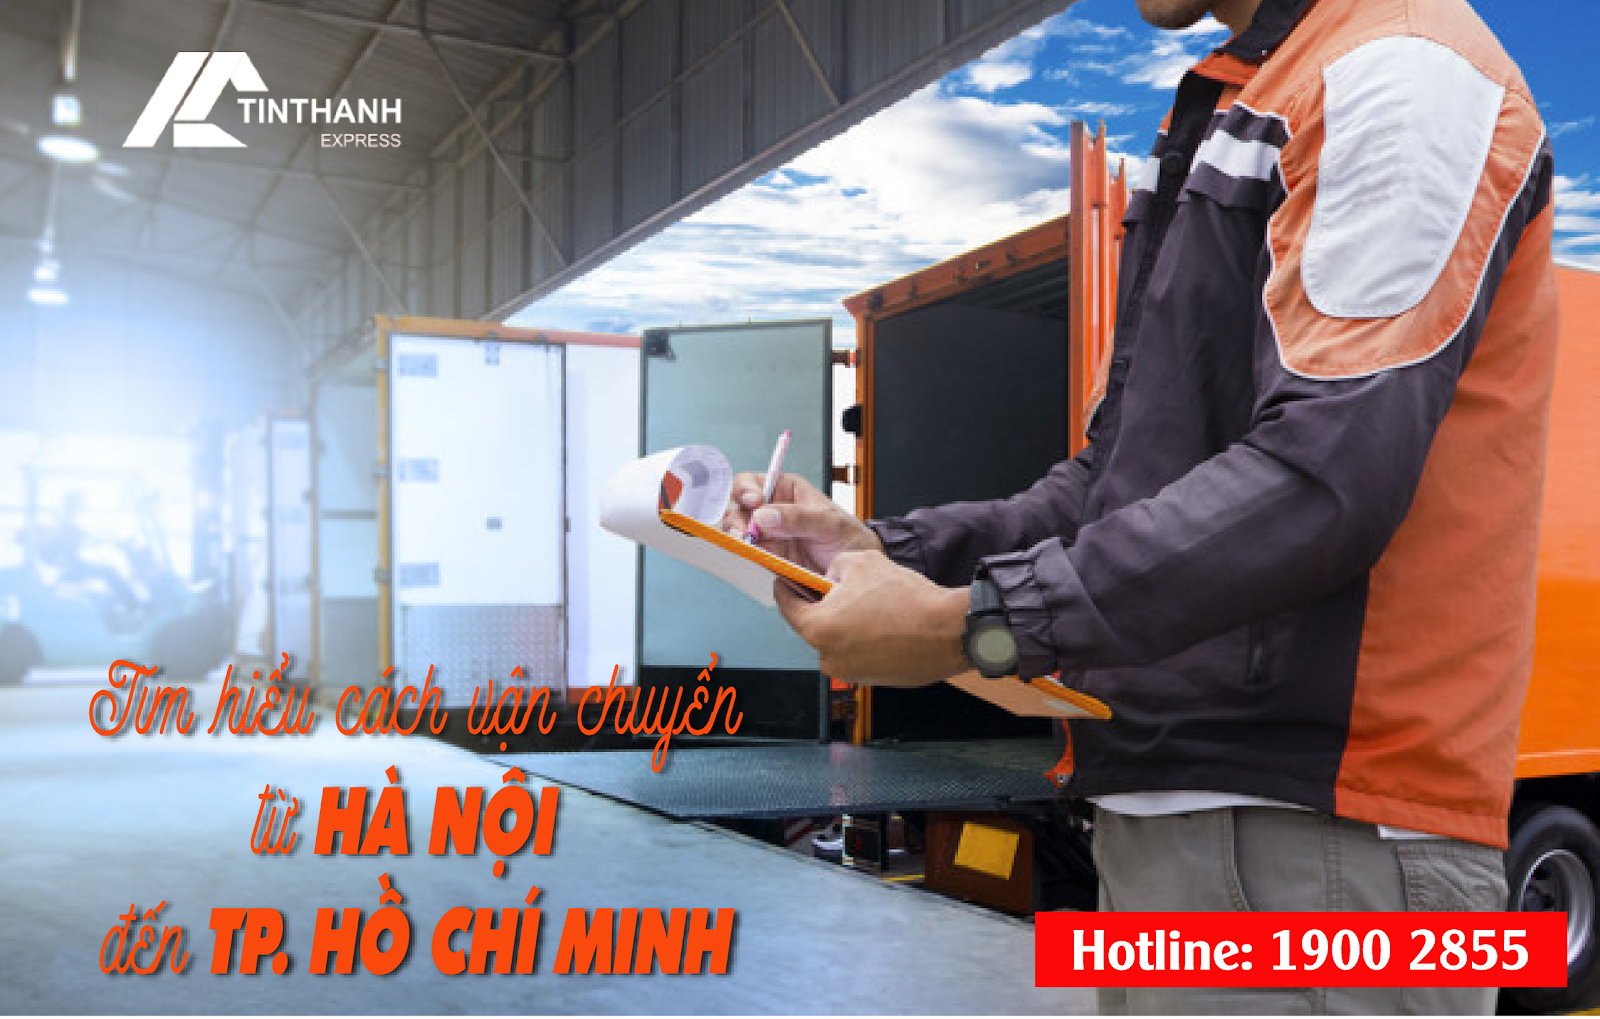 Vận chuyển hàng hóa là hoạt động đang rất nhộn nhịp tại Việt Nam